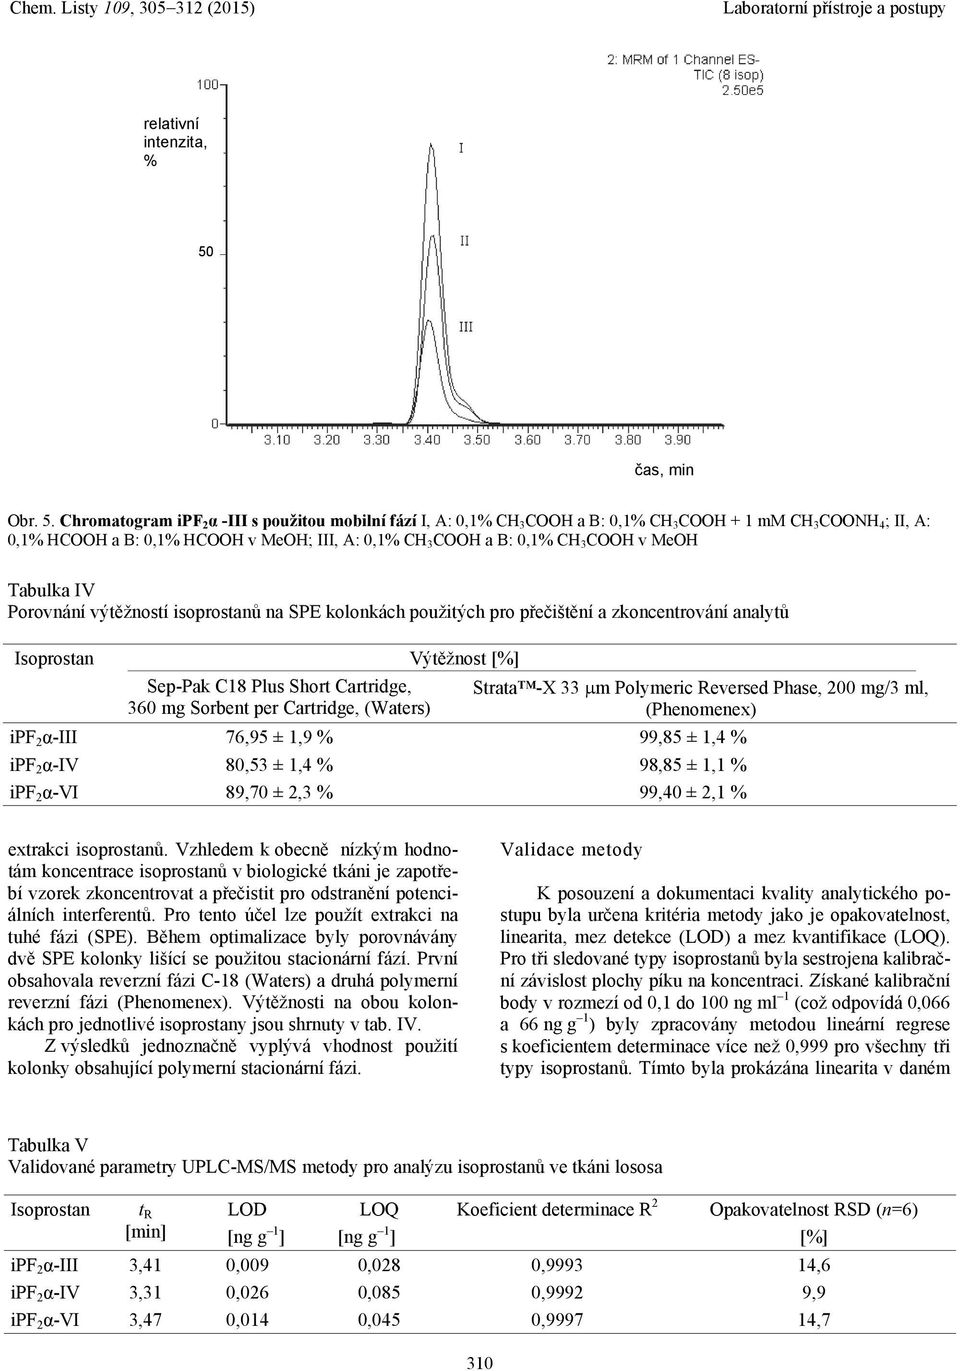 Chromatogram ipf 2 α -III s použitou mobilní fází I, A: 0,1% CH 3 CH a B: 0,1% CH 3 CH + 1 mm CH 3 CNH 4 ; II, A: 0,1% HCH a B: 0,1% HCH v MeH; III, A: 0,1% CH 3 CH a B: 0,1% CH 3 CH v MeH Tabulka IV